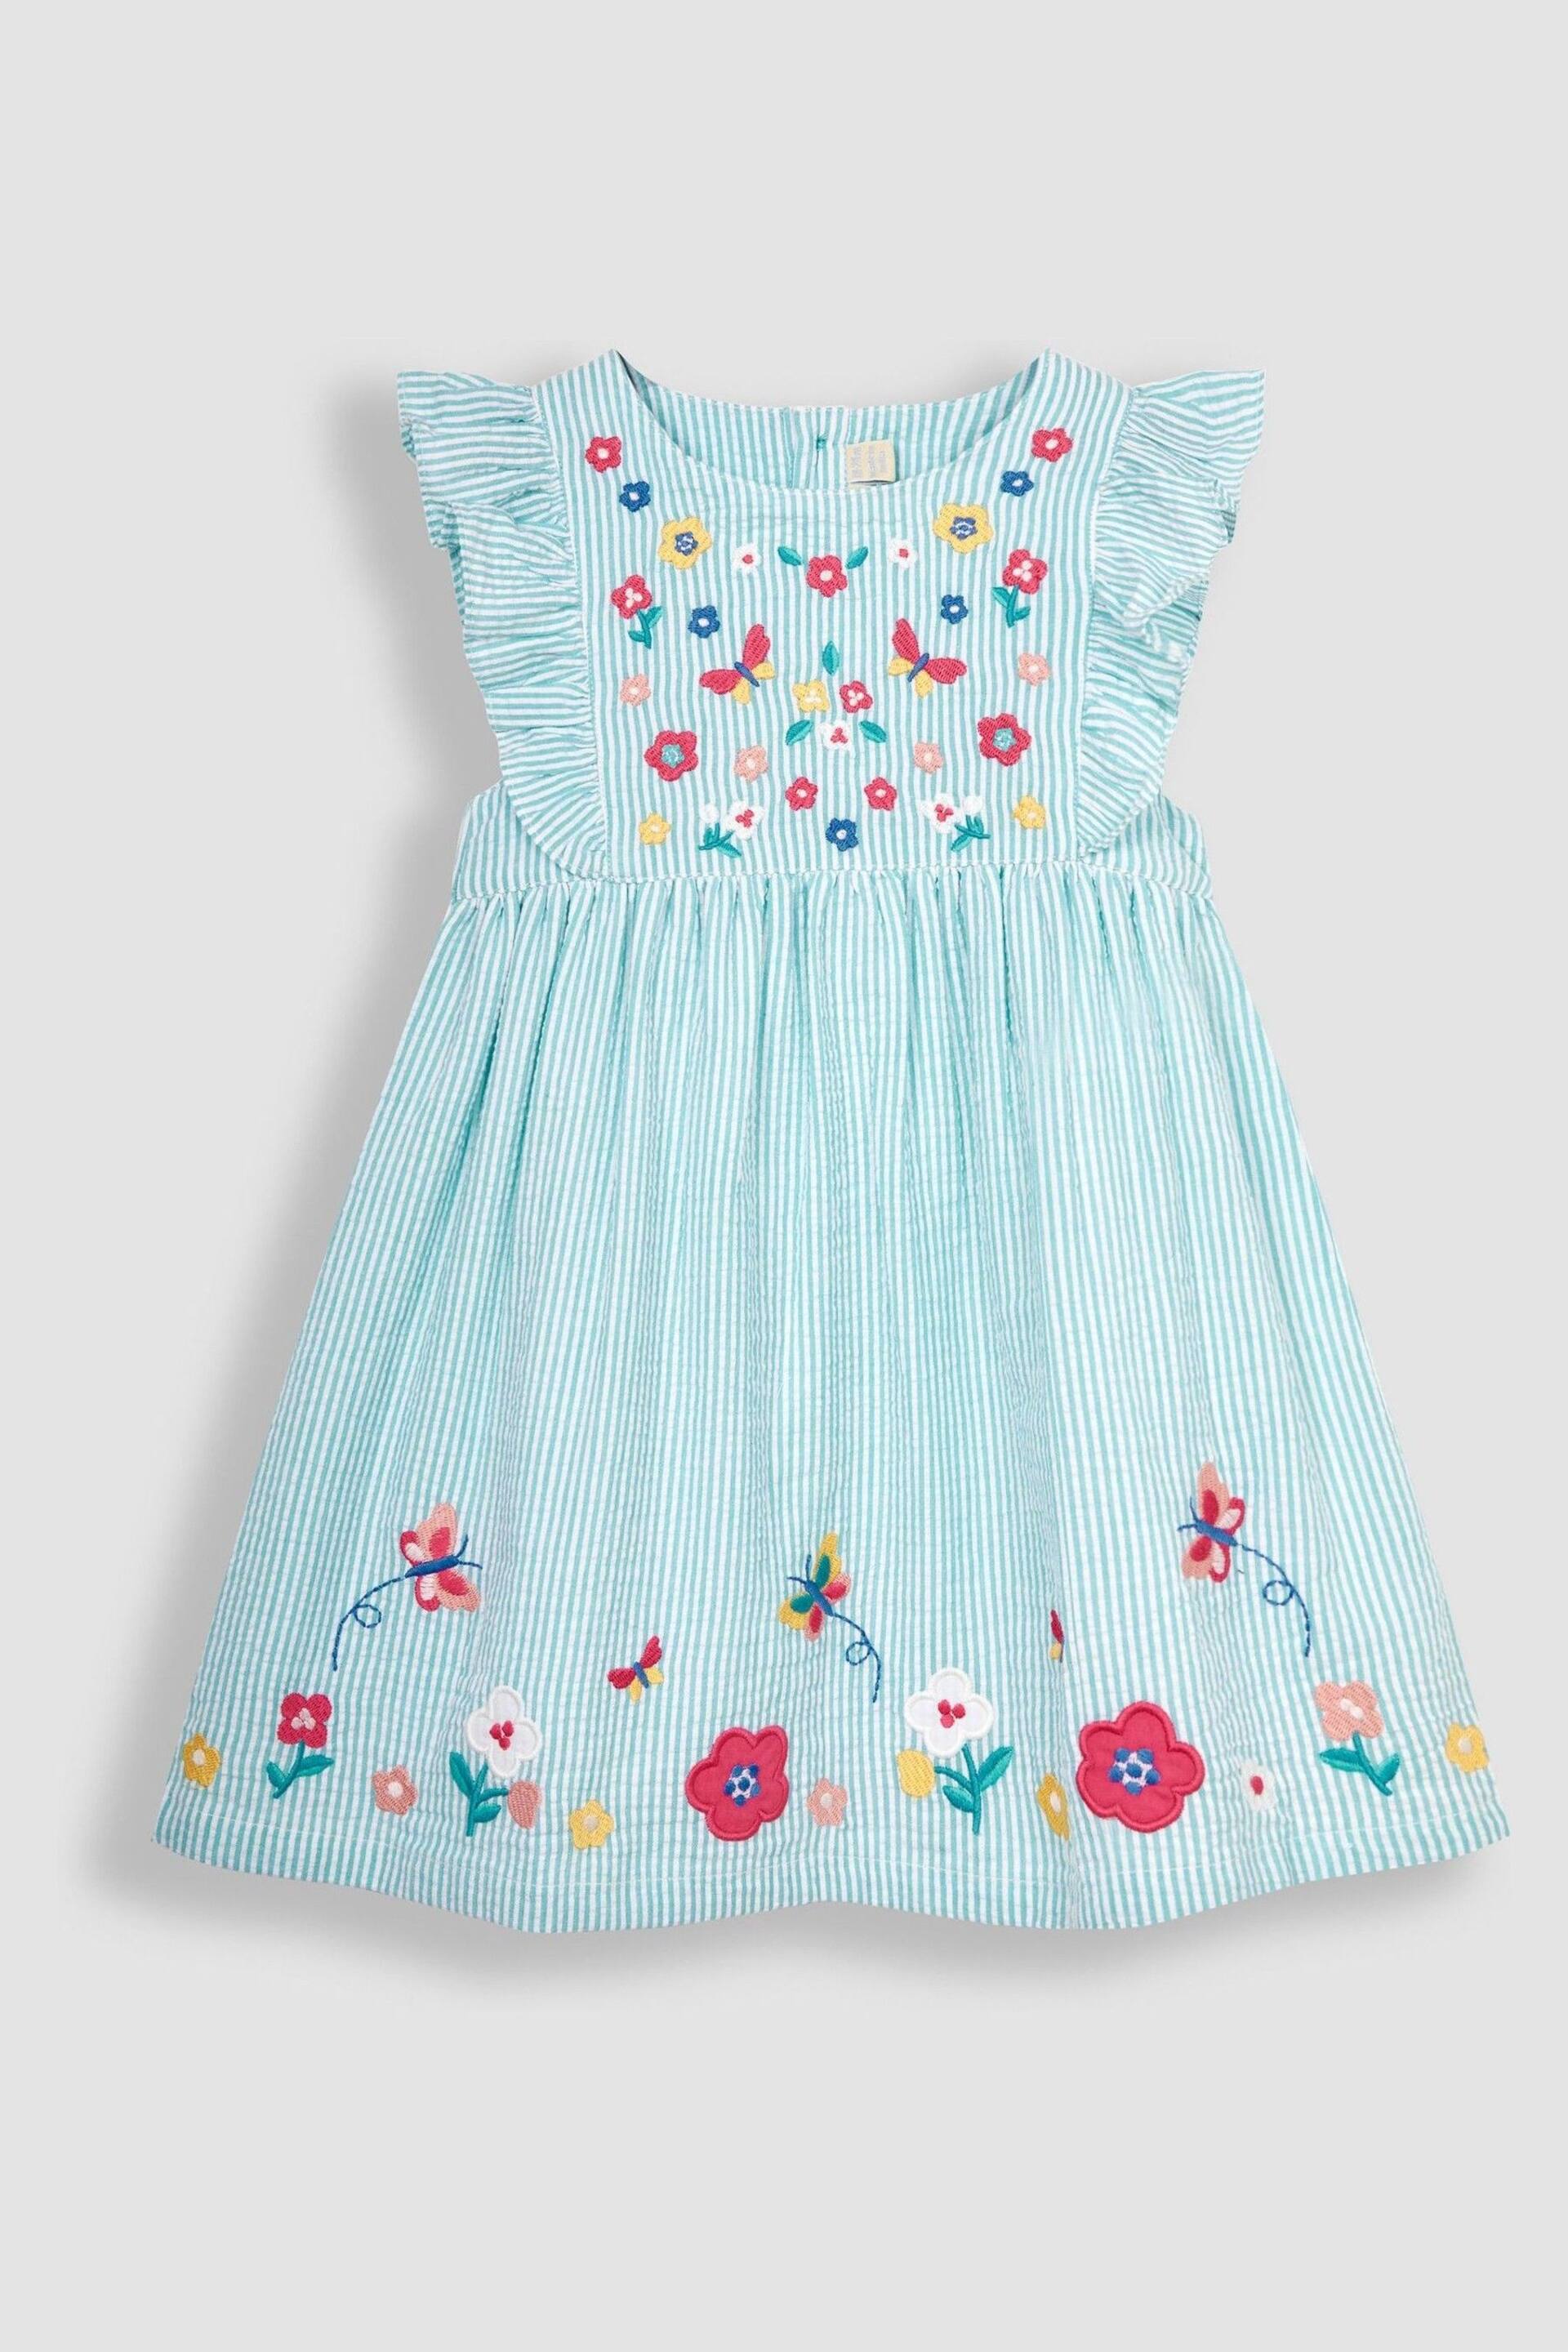 JoJo Maman Bébé Duck Egg Blue Butterfly Appliqué Pretty Summer Dress - Image 1 of 3